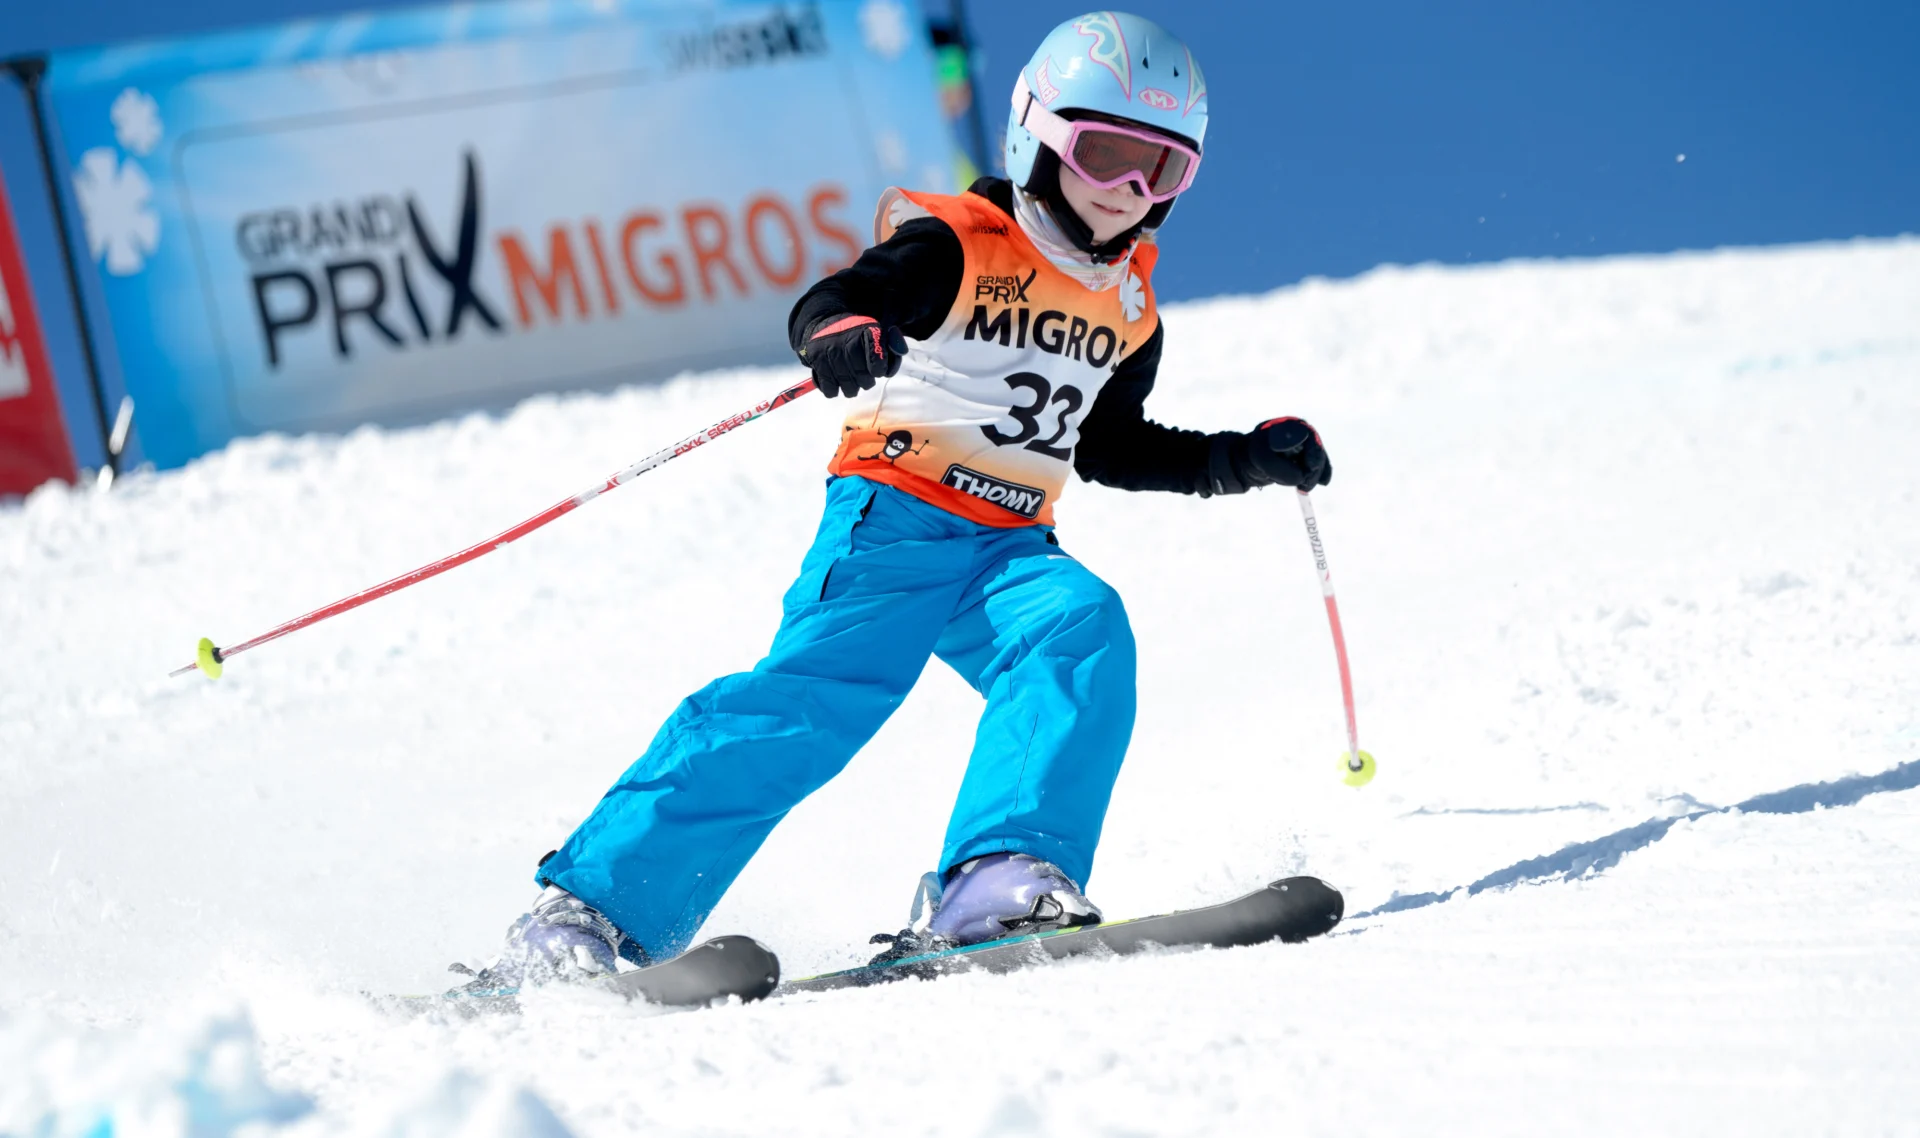 Enfant participant à une descente du Grand Prix Migros.